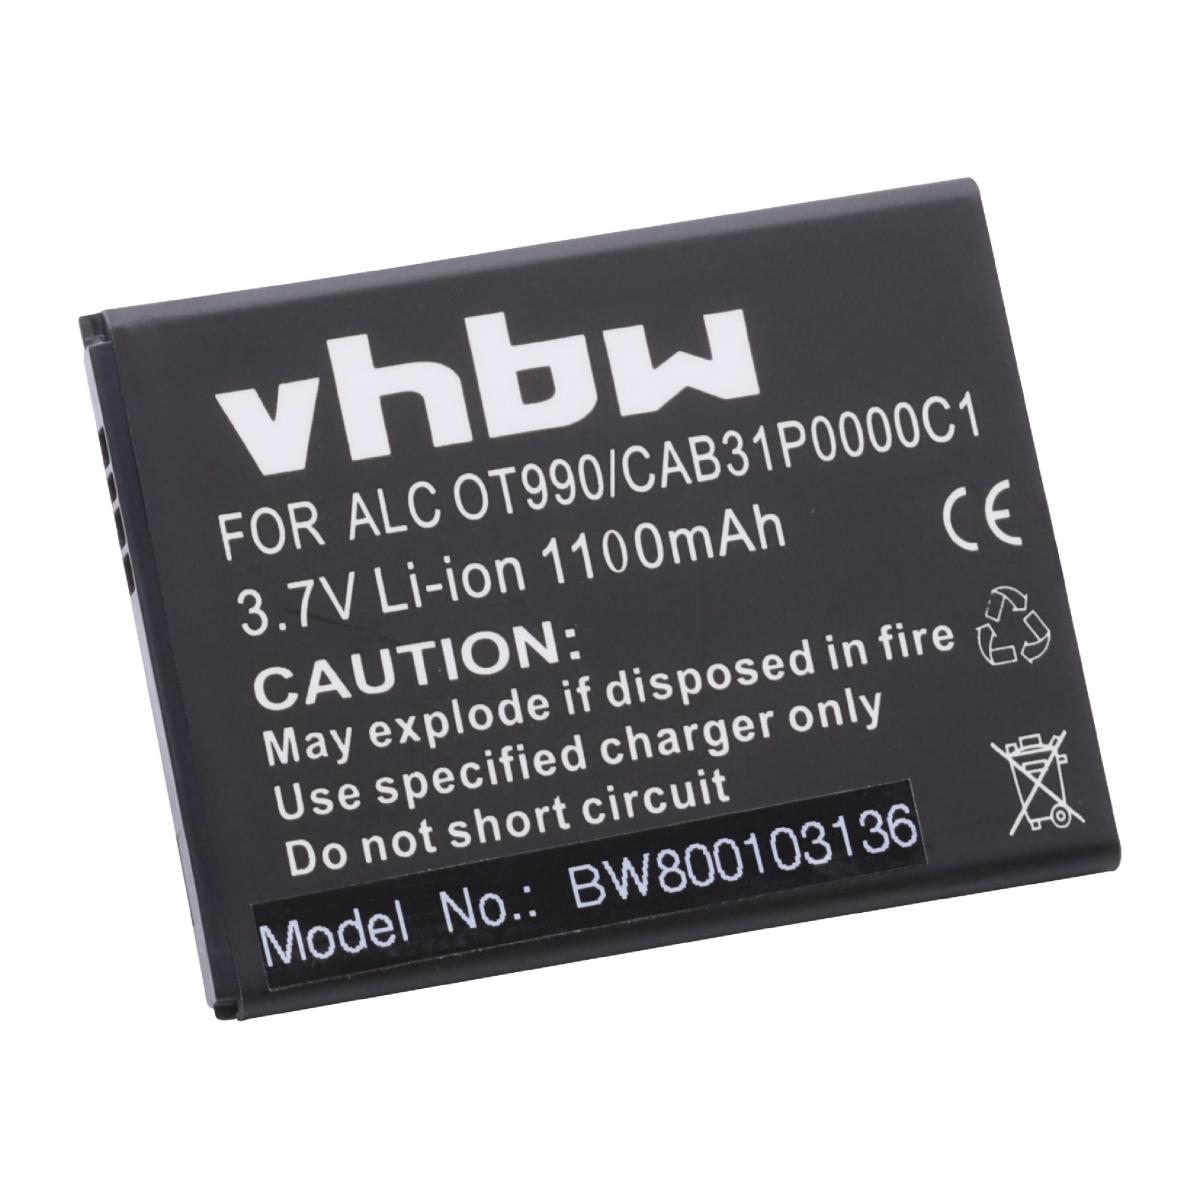 Vhbw - vhbw Li-Ion batterie 1100mAh (3.7V) pour Smartphone téléphone Alcatel One Touch OT-908M, OT-910, OT-915, OT-918, OT-918 Mix comme CAB31P0000C1, BY71. - Batterie téléphone